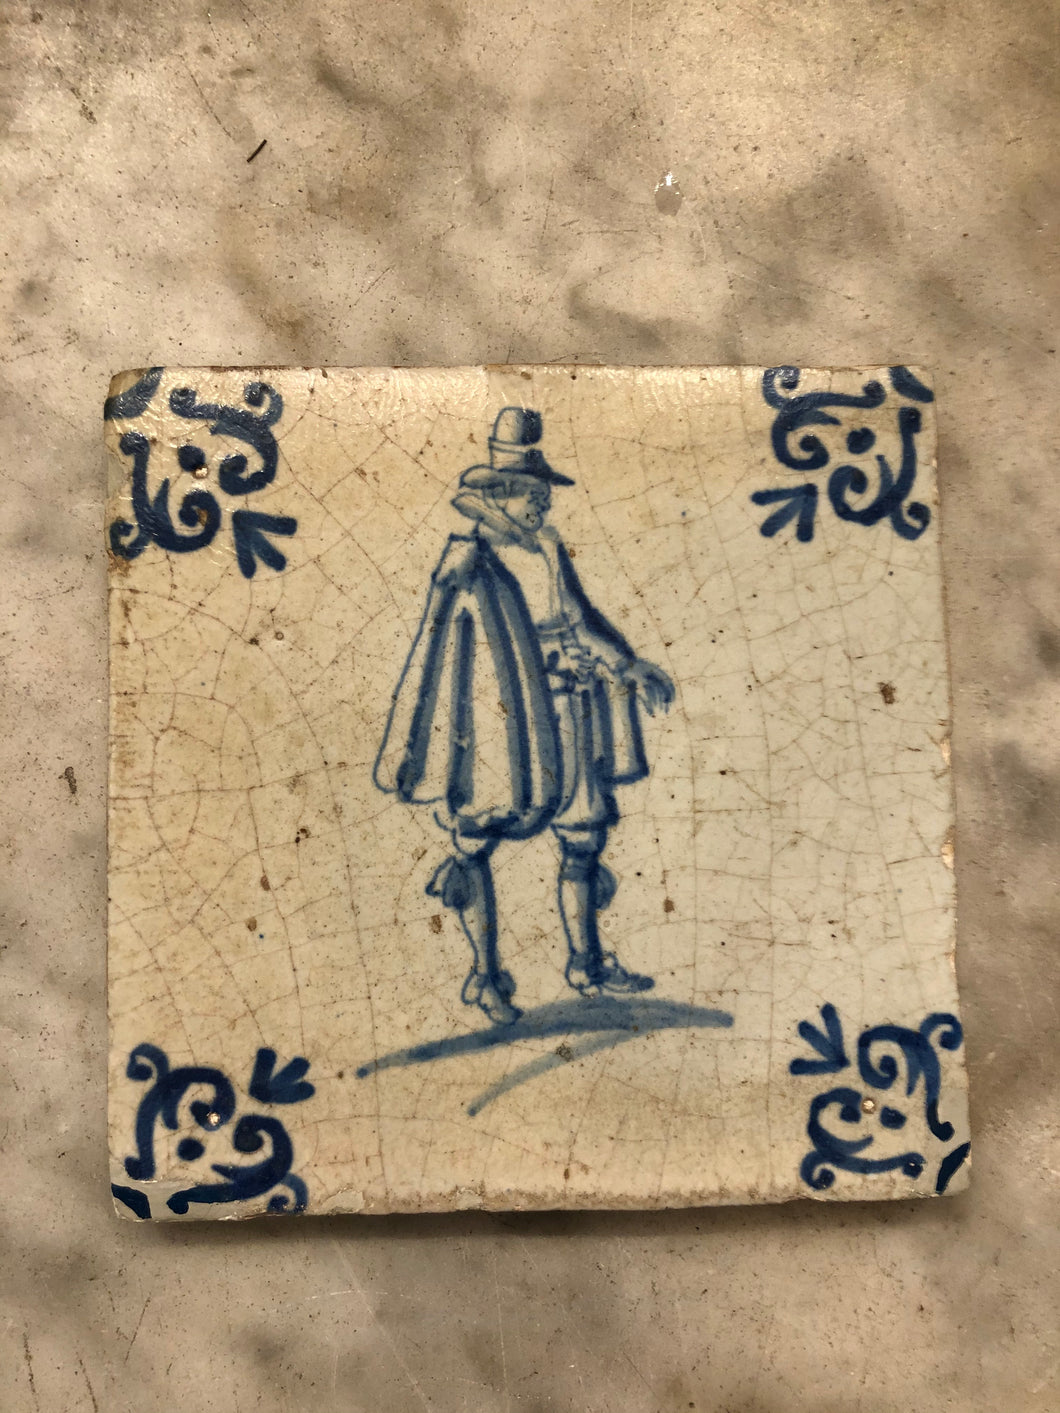 Nice delft handpainted dutch tile with gentleman